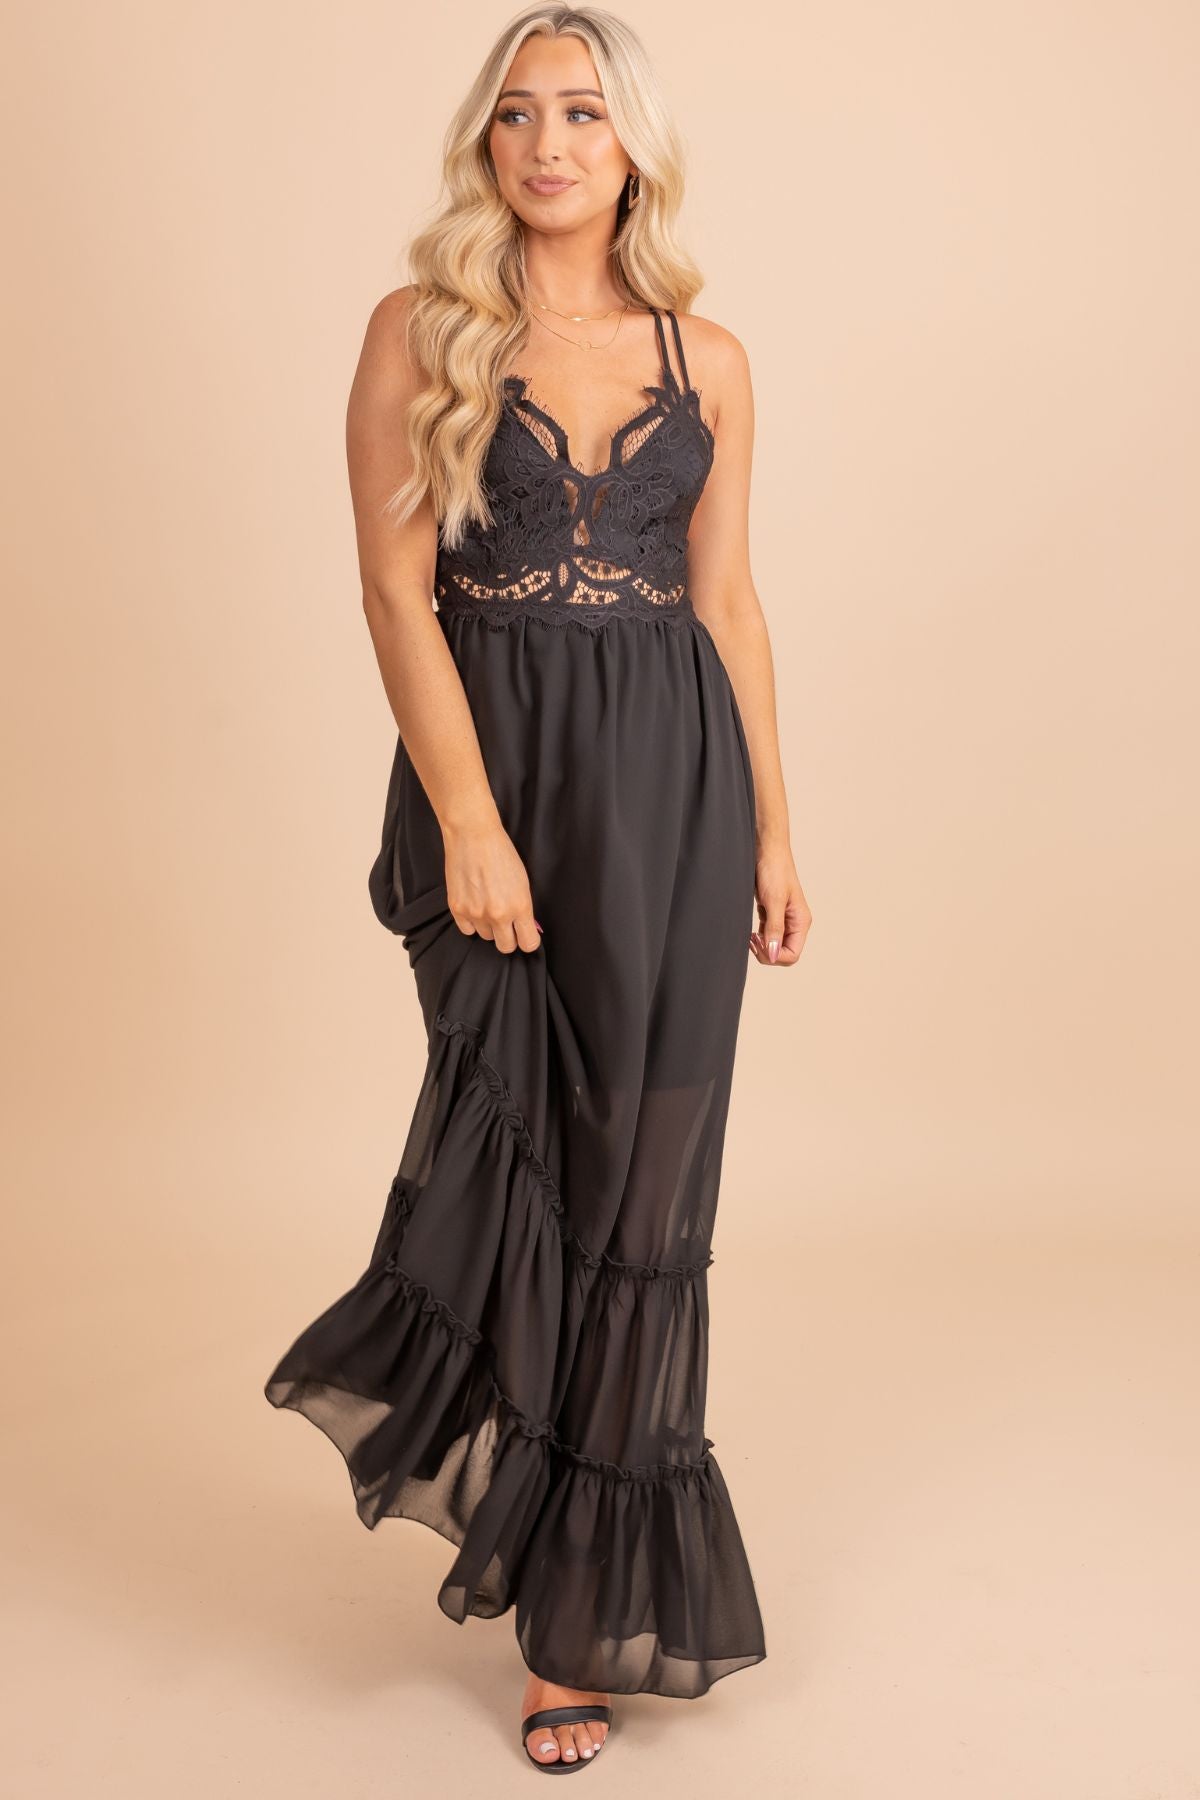 Black Lace Bodice Boutique Maxi Dresses for Women